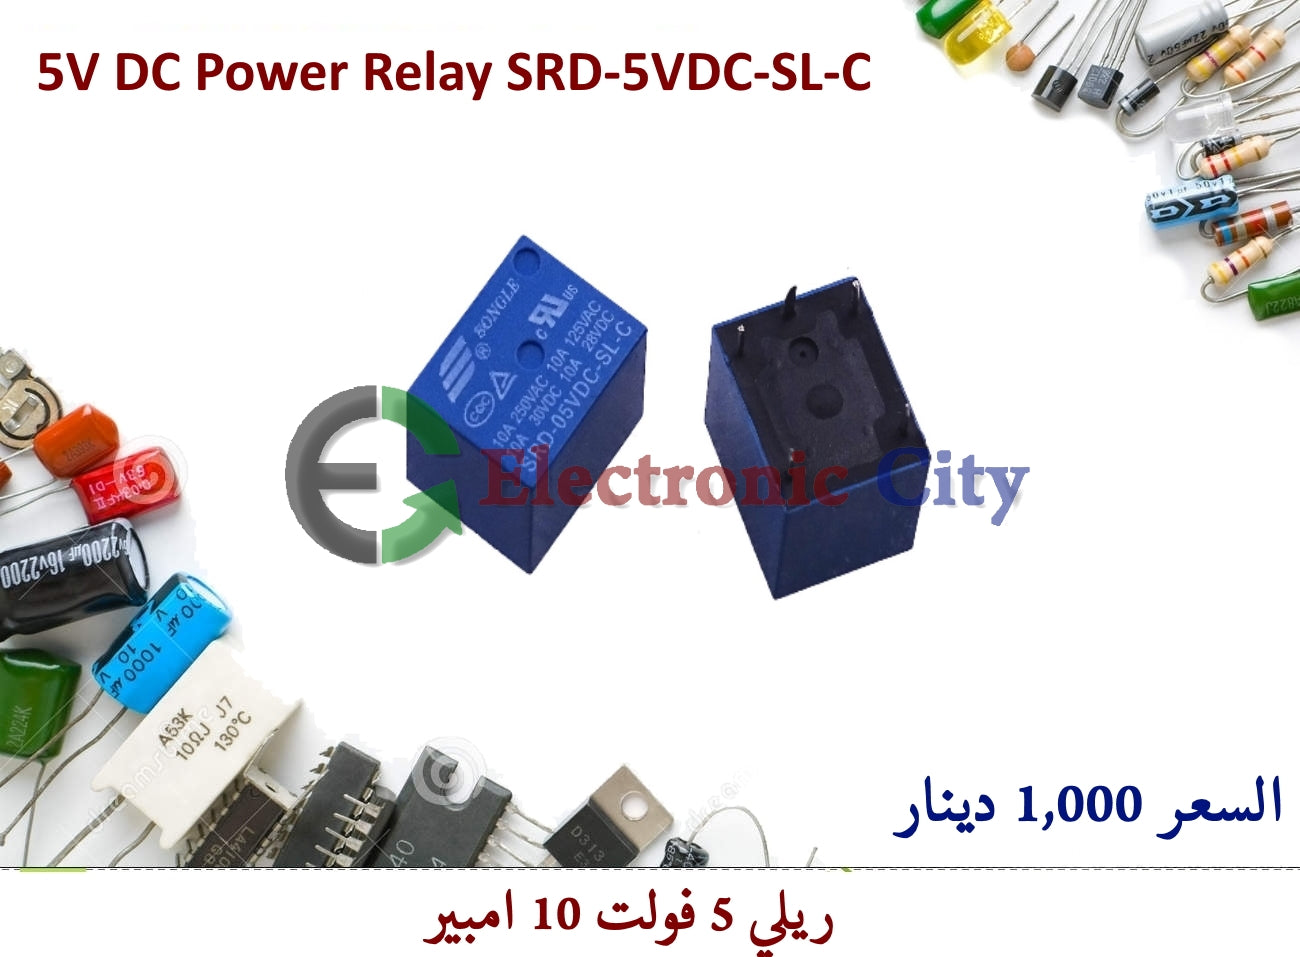 5V DC Power Relay SRD-5VDC-SL-C